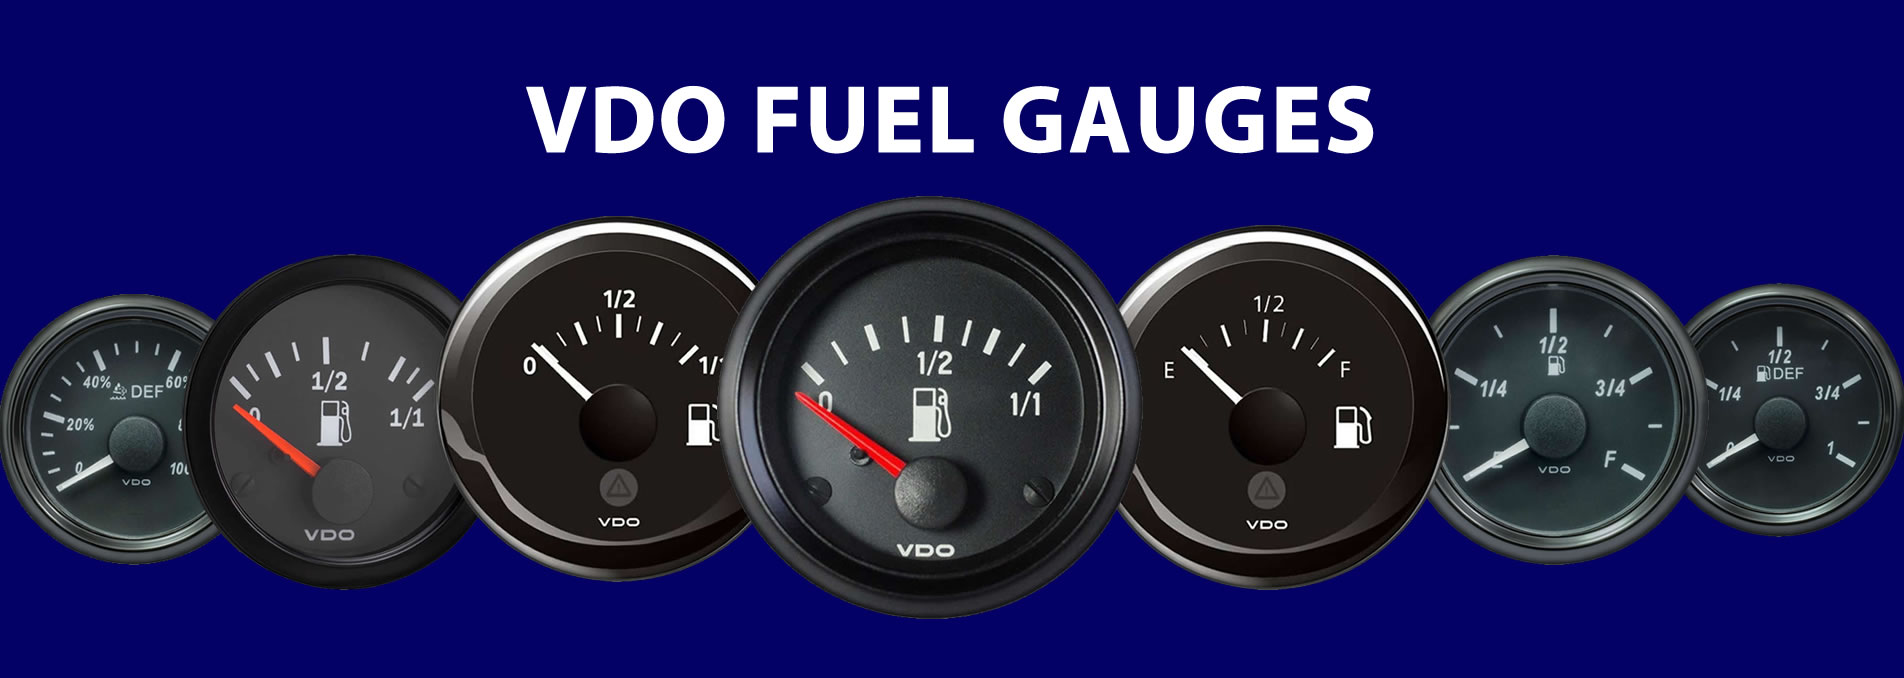 vdo fuel gauges banner